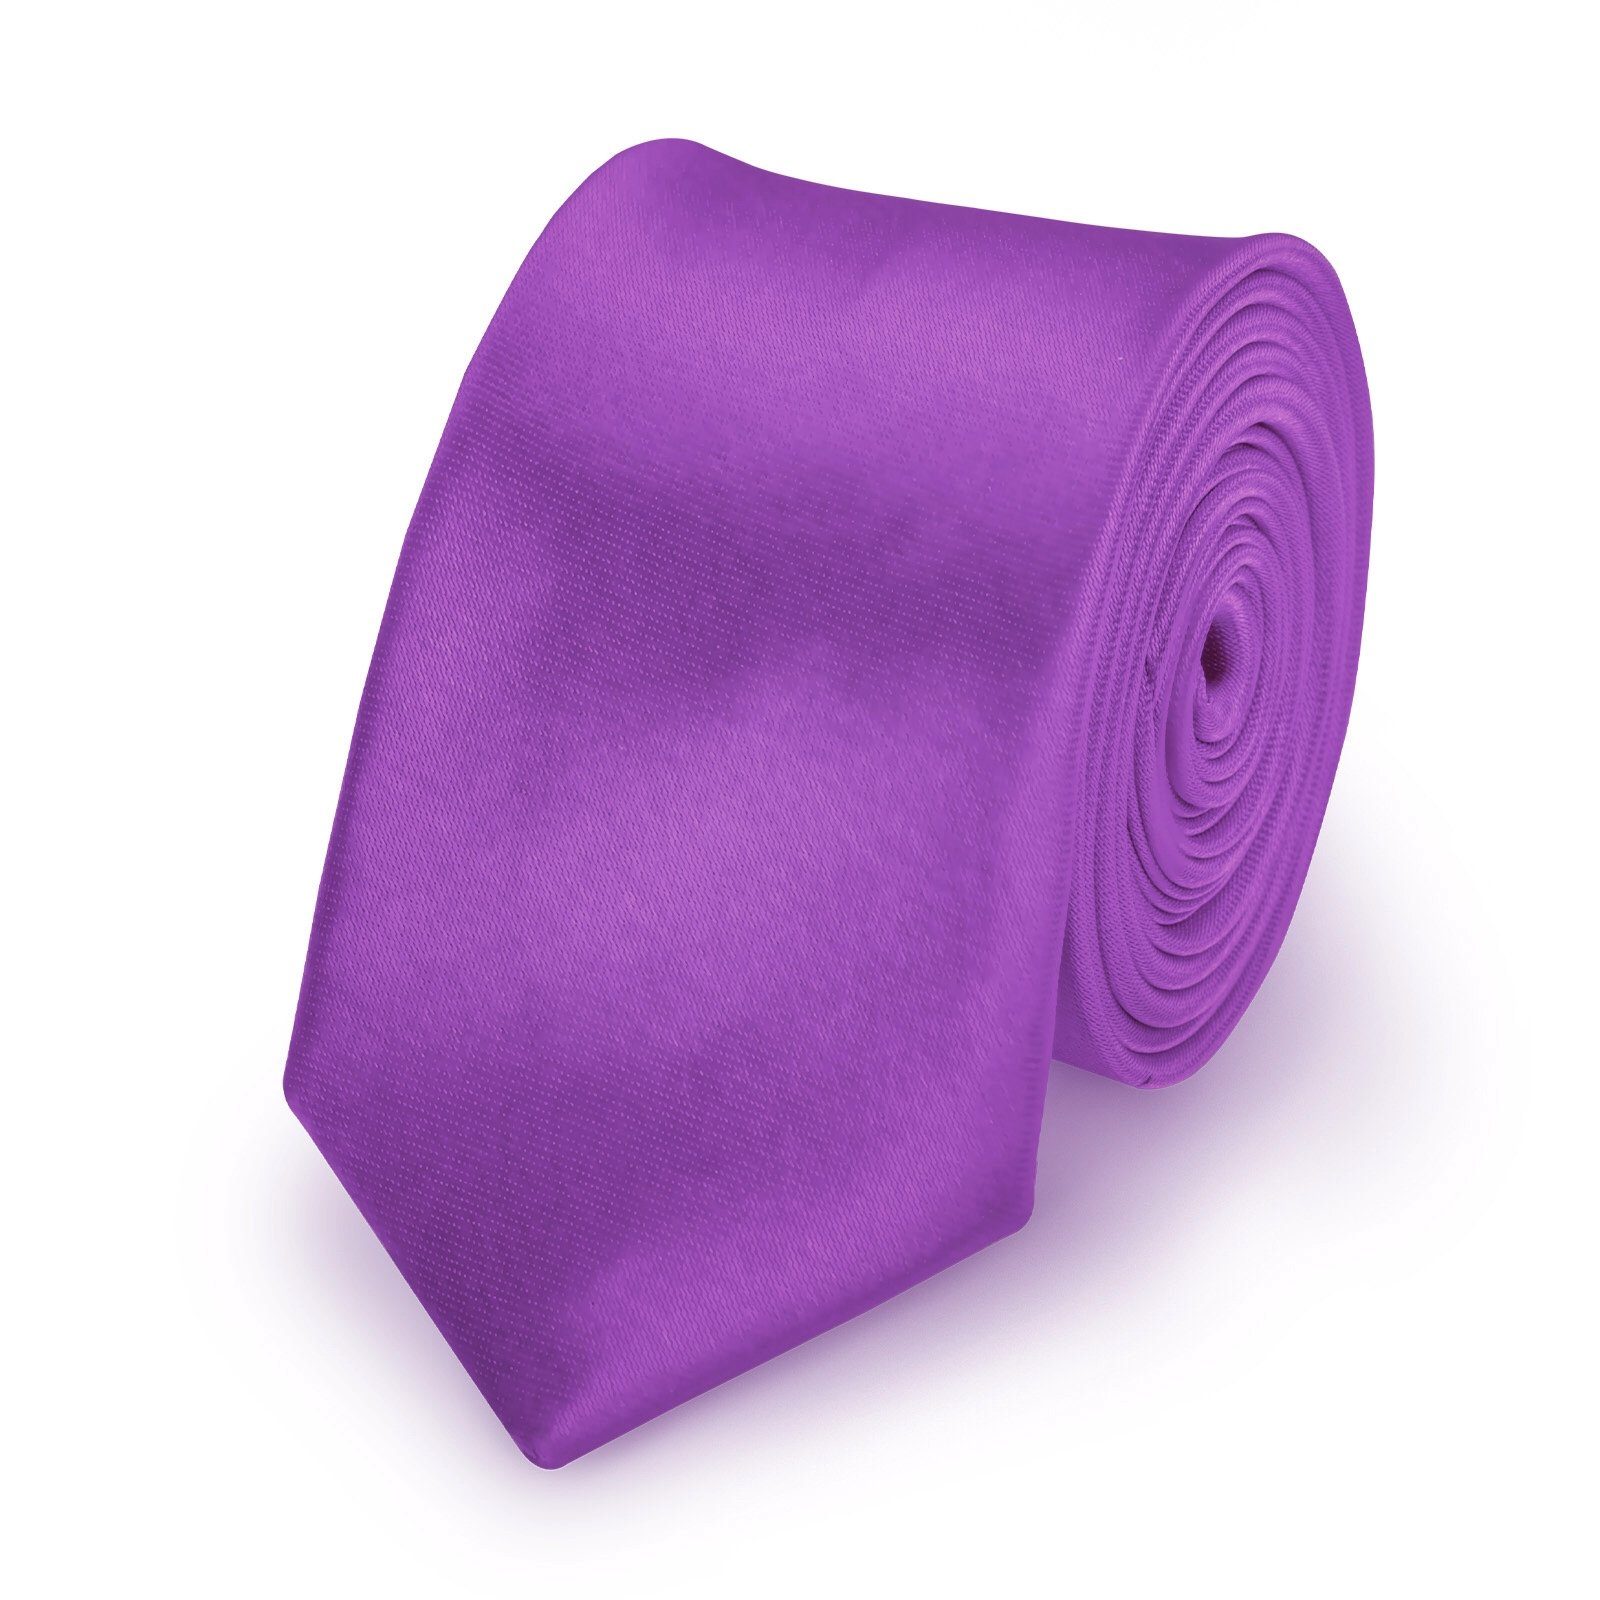 StickandShine Krawatte Krawatte Fliege Einstecktuch als SET 3 Teilig Uni aus Polyester 5 cm Breite / 148 cm Länge Einfarbig modern für Hochzeit Anzug (Krawatte Fliege und Einstecktuch, Spar-SET, 3 Teilig) SET Uni Lila